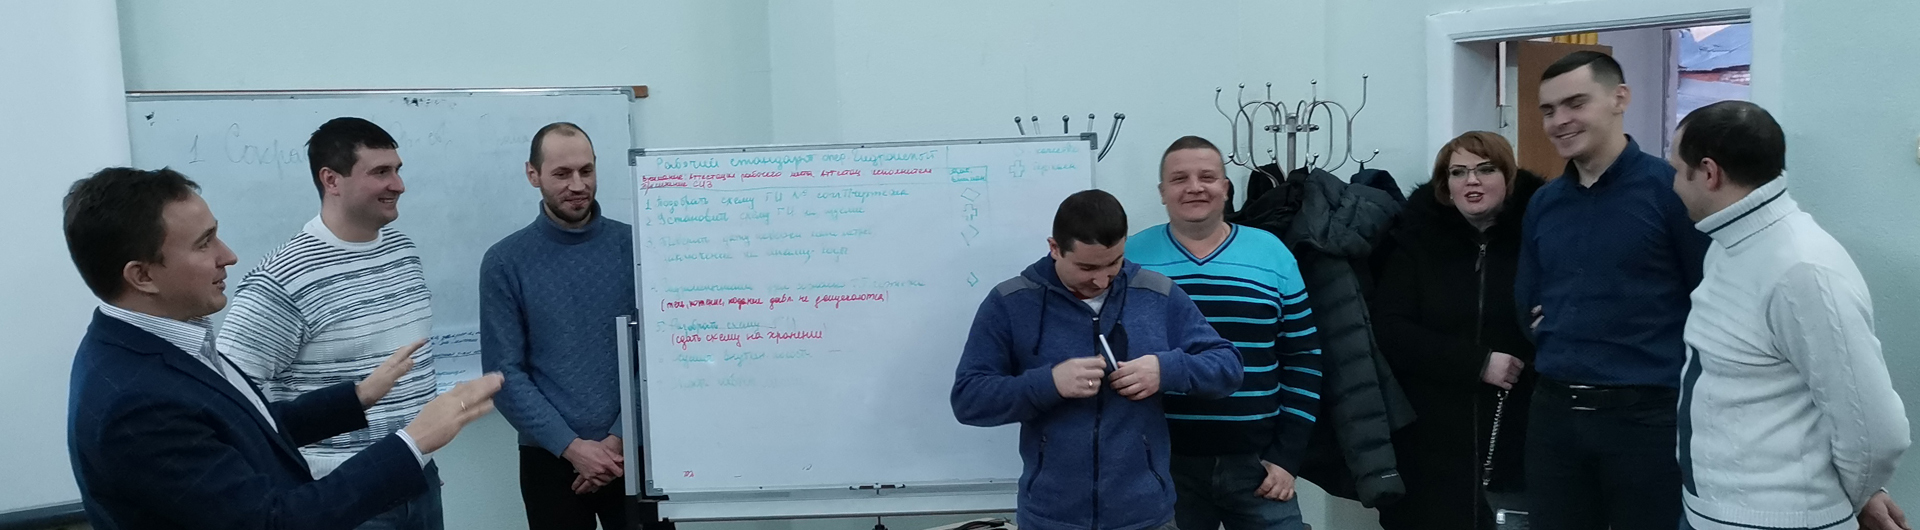 Обучение сотрудников Калужского турбинного завода: часть 1 вводная